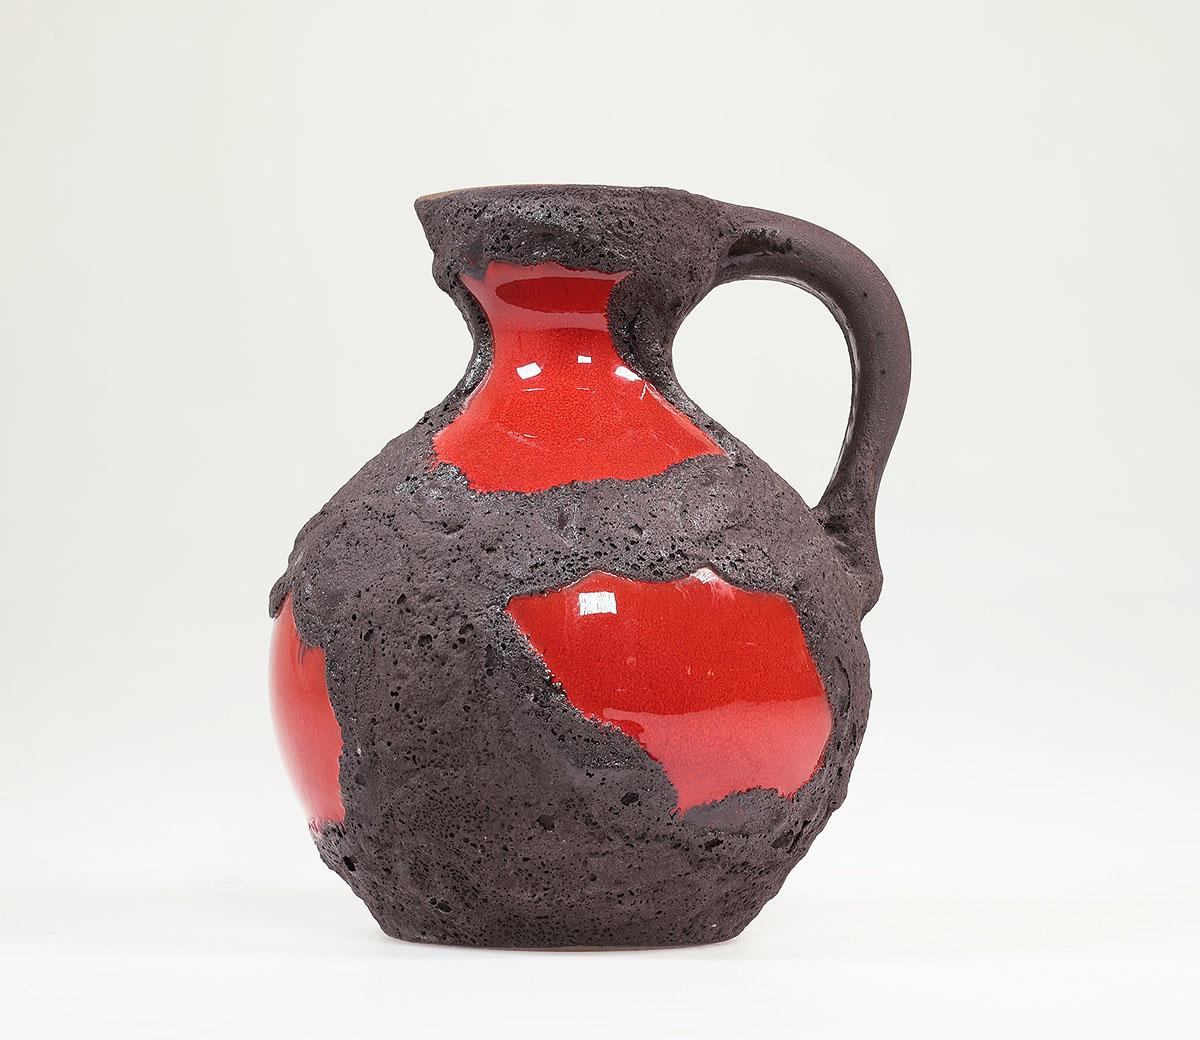 Vintage Keramik Vase Fat Lava, hergestellt von Marei Keramik, Westdeutschland. 1970s.

Schöne Krugvase in feuerwehrroter Glanzglasur mit dickem dunkelbraunem Rauhdekor.

Höhe 19 cm.

nummeriert 4301

In gutem Zustand.

